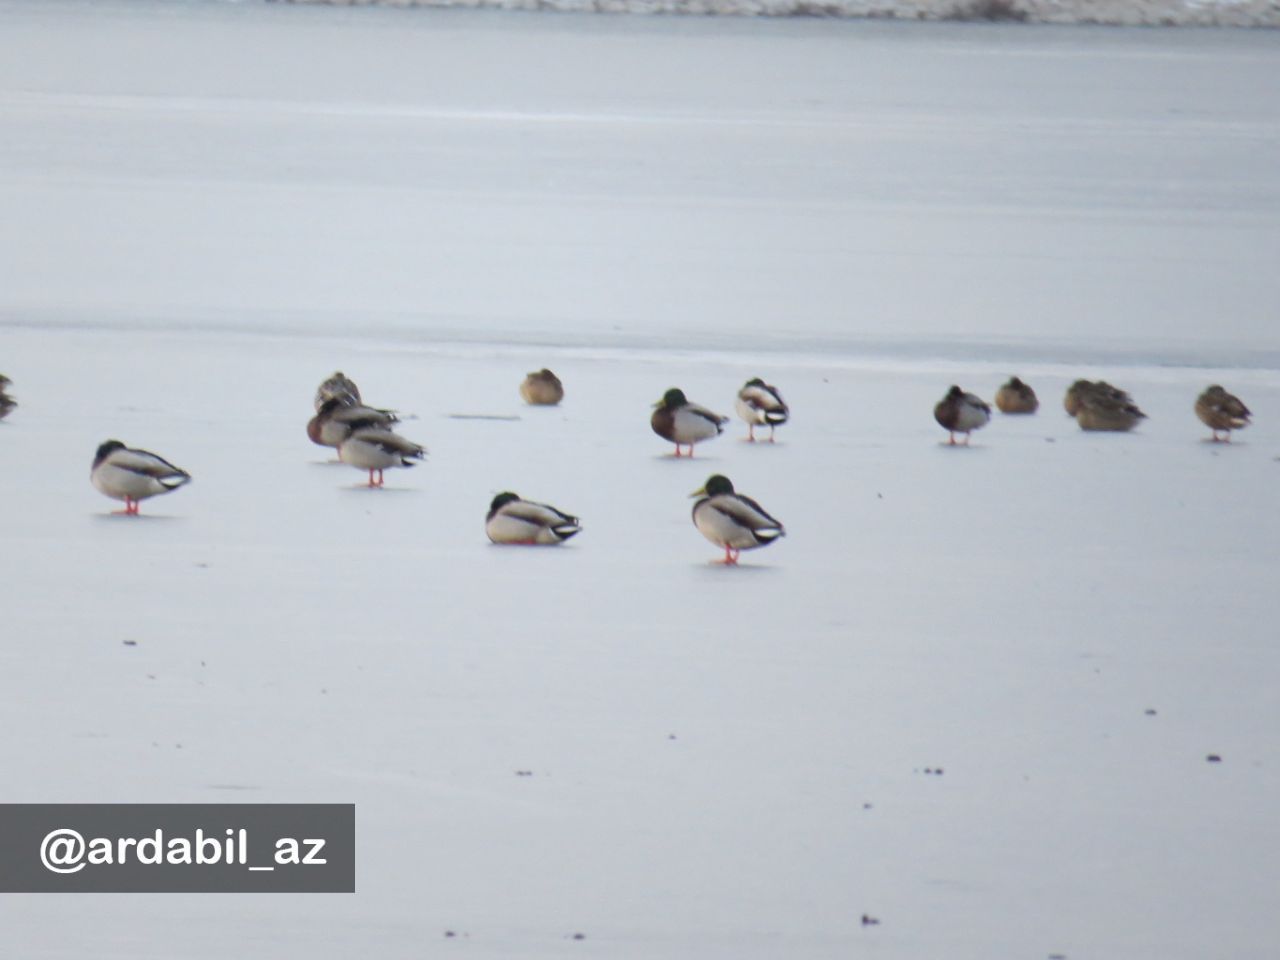 پرندگان مهاجر دریاچه پوشیده از برف و یخ شورابیل گرسنه هستند!پرندگان مهاجر دریاچه پوشیده از برف و یخ 